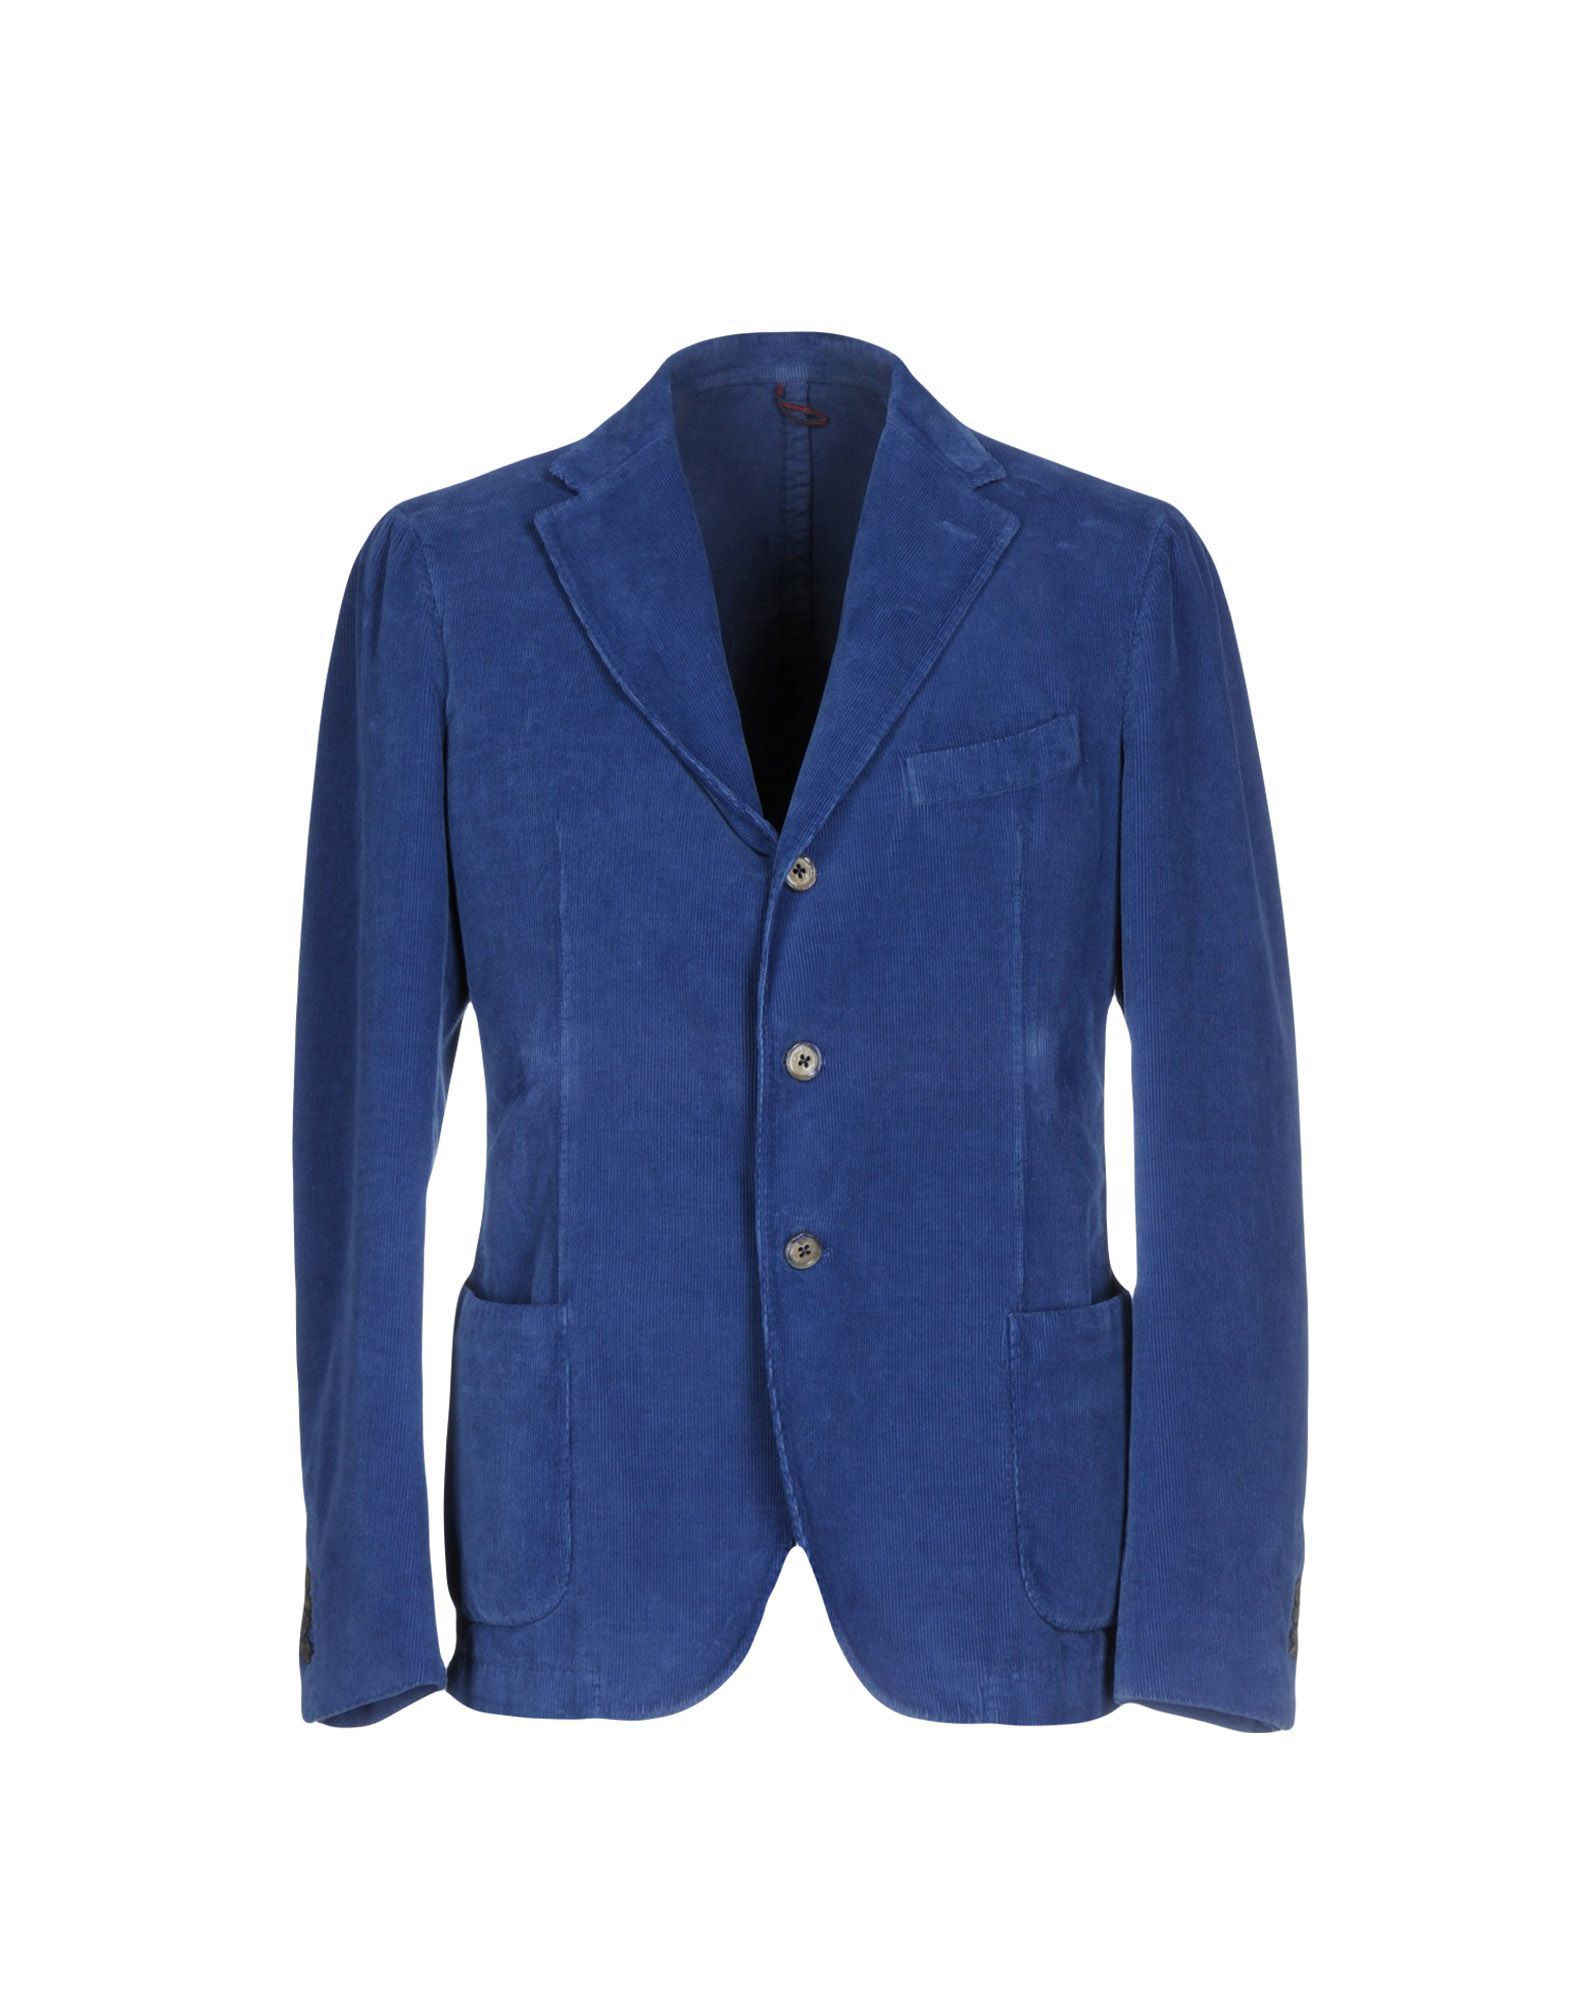 《送料無料》SANTANIELLO Napoli メンズ テーラードジャケット ブルー 52 コットン 100%